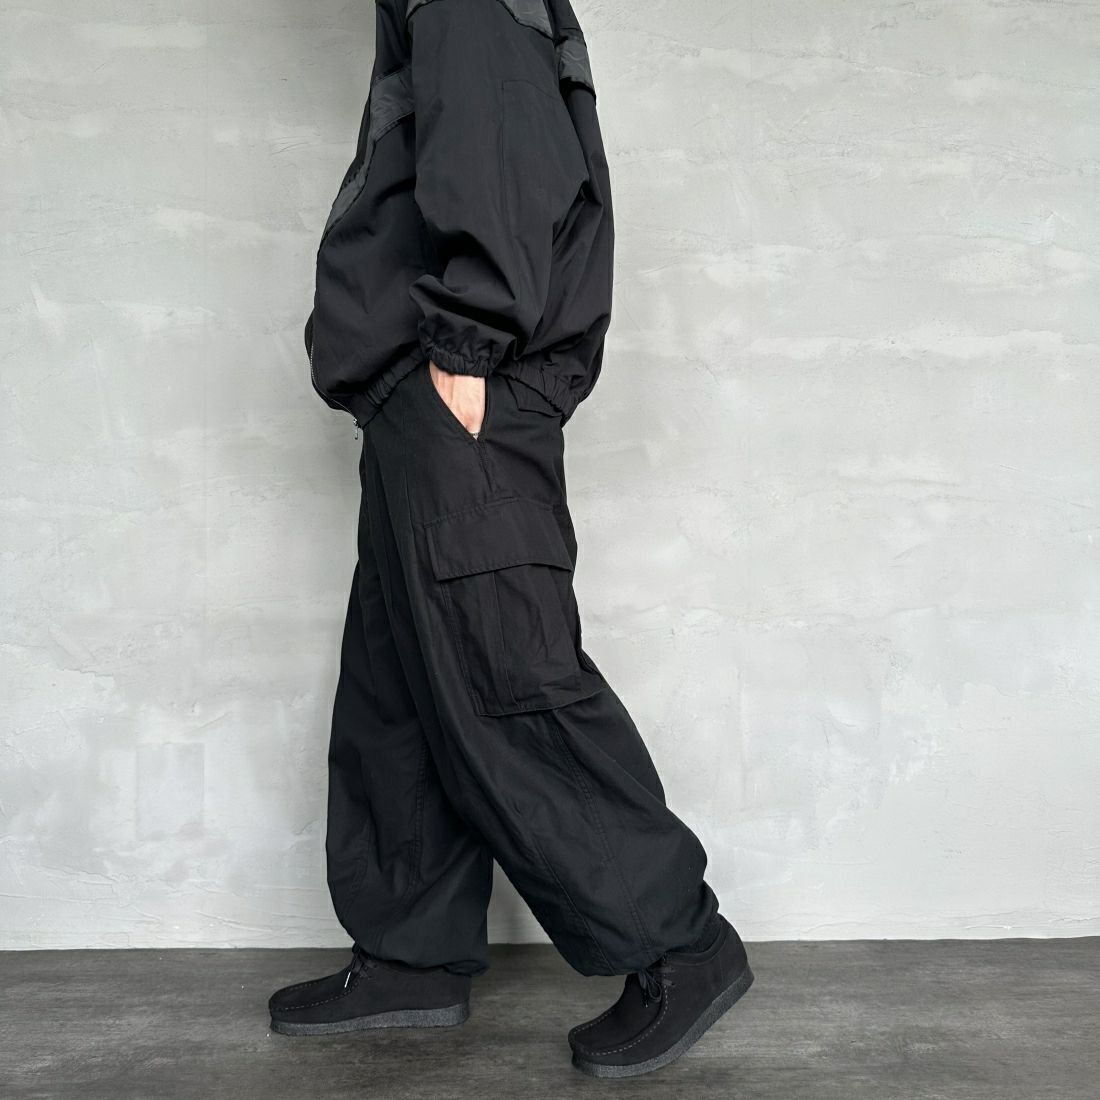 Jeans Factory Clothes [ジーンズファクトリークローズ] ワイドBDUカーゴパンツ [JFC-233-080] BLACK&&モデル身長：173cm 着用サイズ：M&&